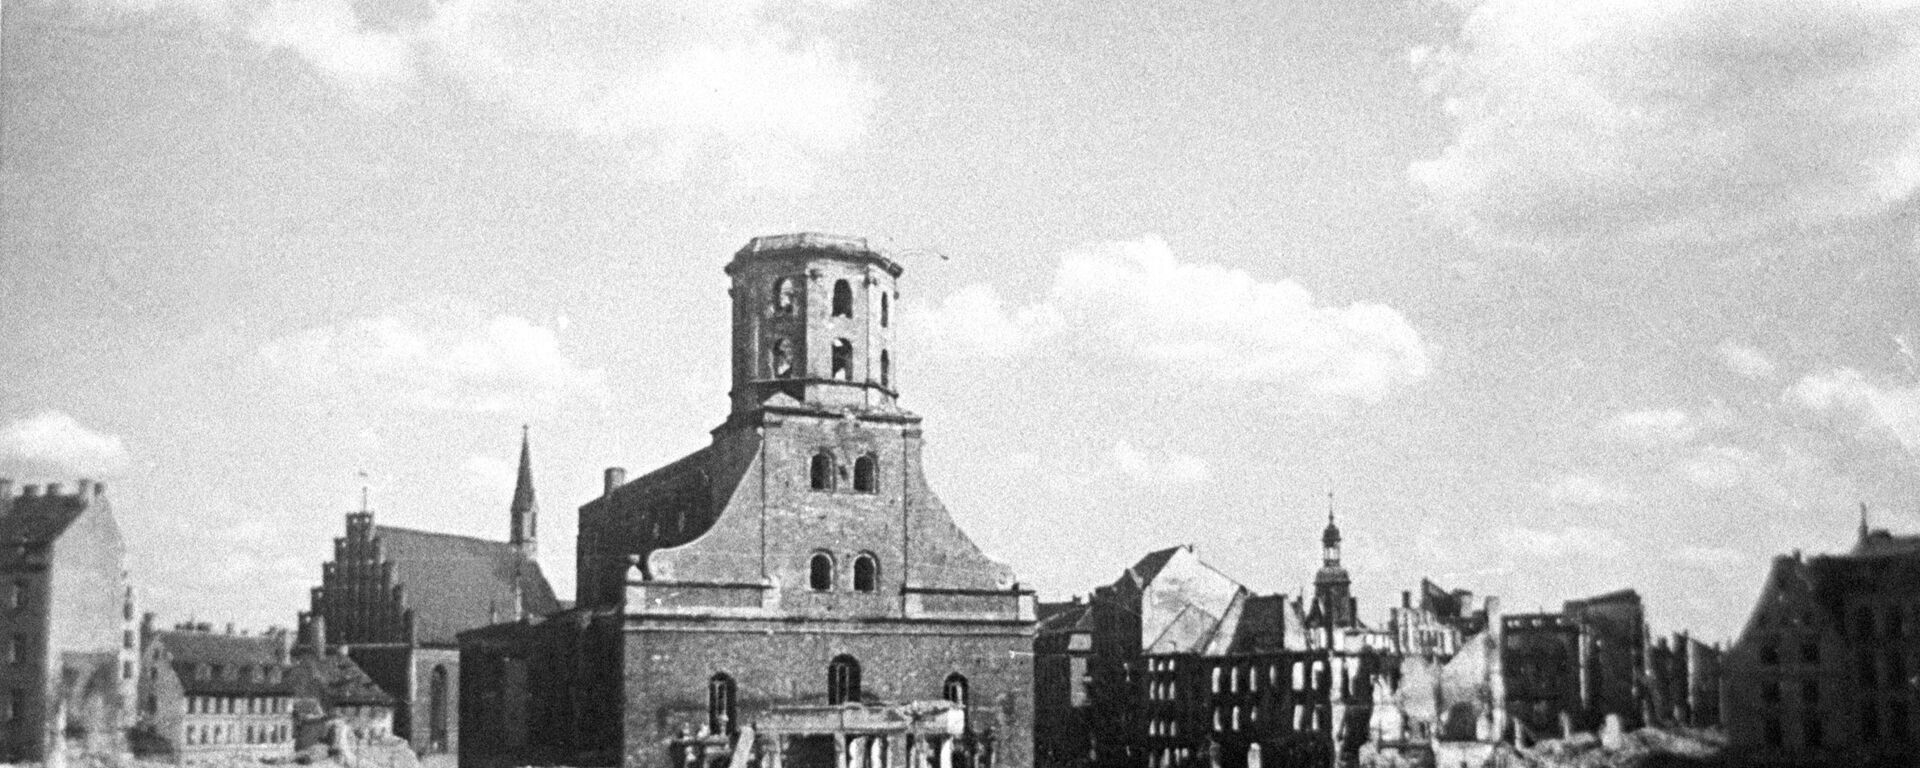 Ратушная площадь в Риге после отступления фашистов, октябрь 1944 года - Sputnik Латвия, 1920, 13.10.2020